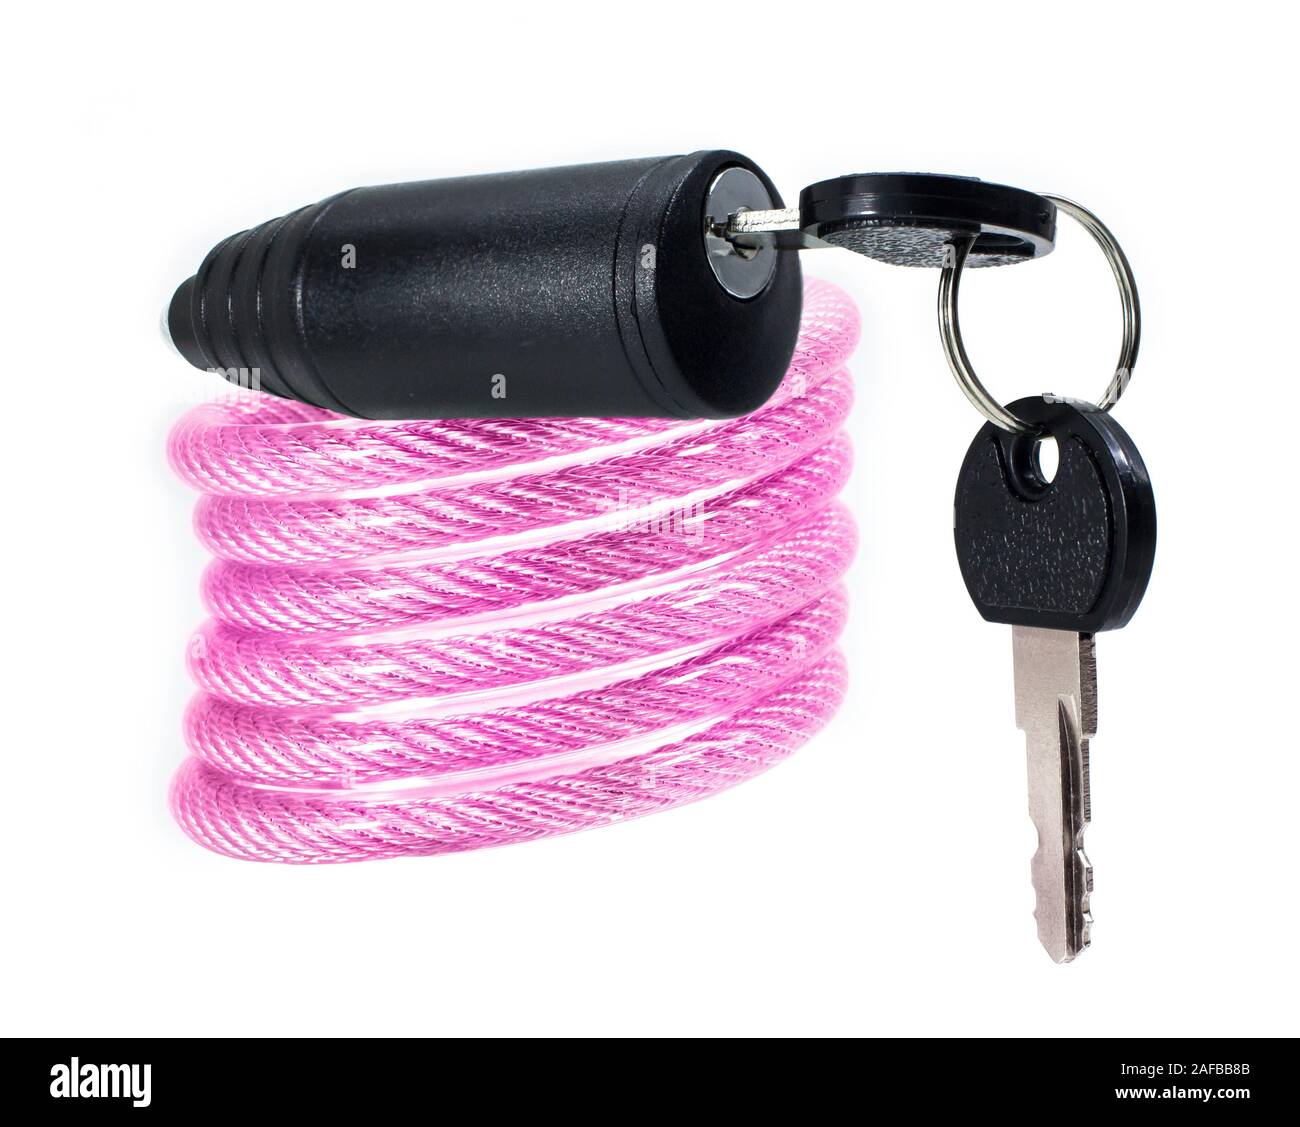 Fahrradschloss rosa für Fahrrad mit Schlüssel isoliert auf weißem  Hintergrund Stockfotografie - Alamy